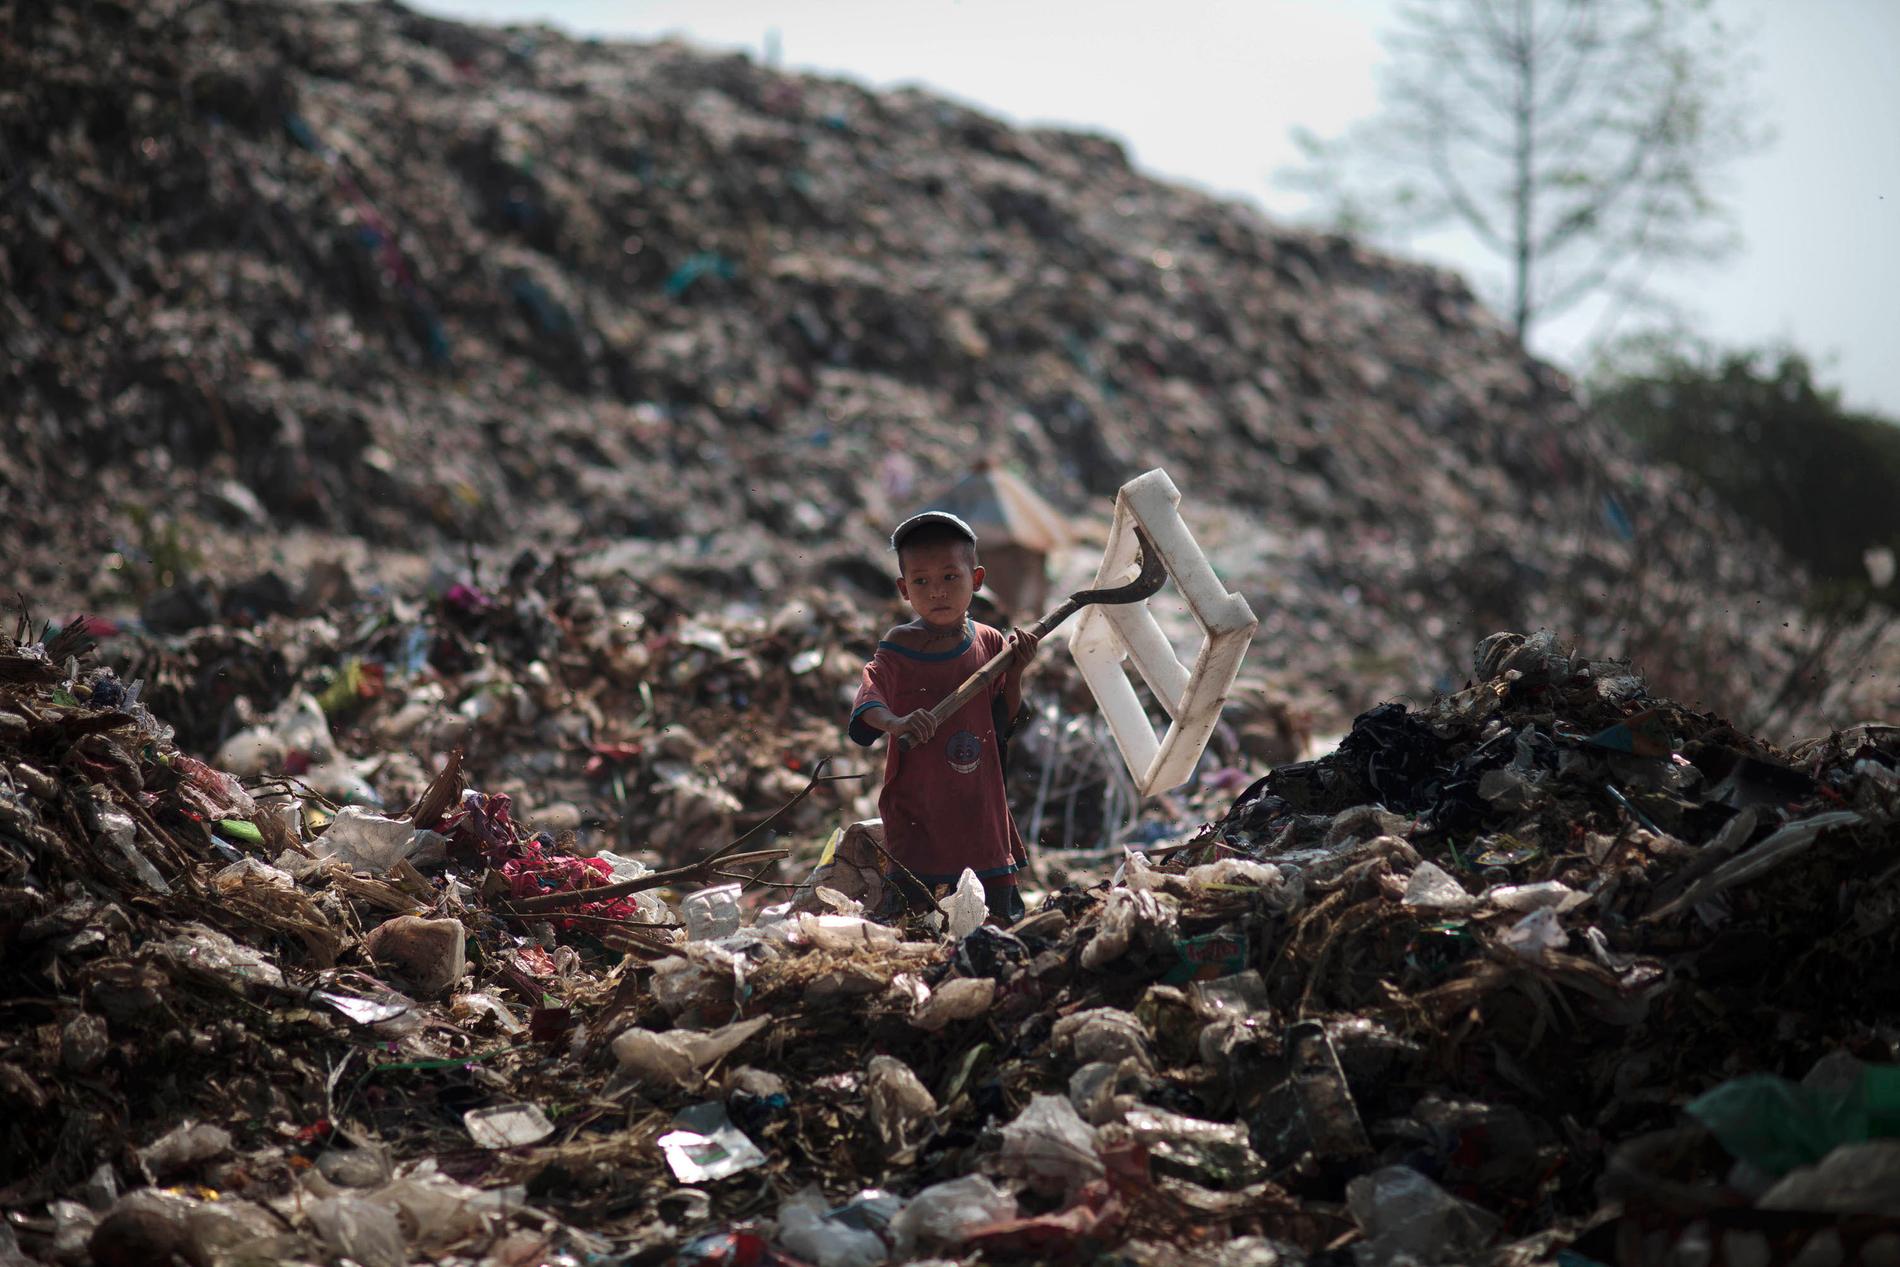 Världens rikaste får allra mest förmögenhetstillväxt – på bekostnad av världens fattiga, menar Oxfam. Arkivbild från Thailand.